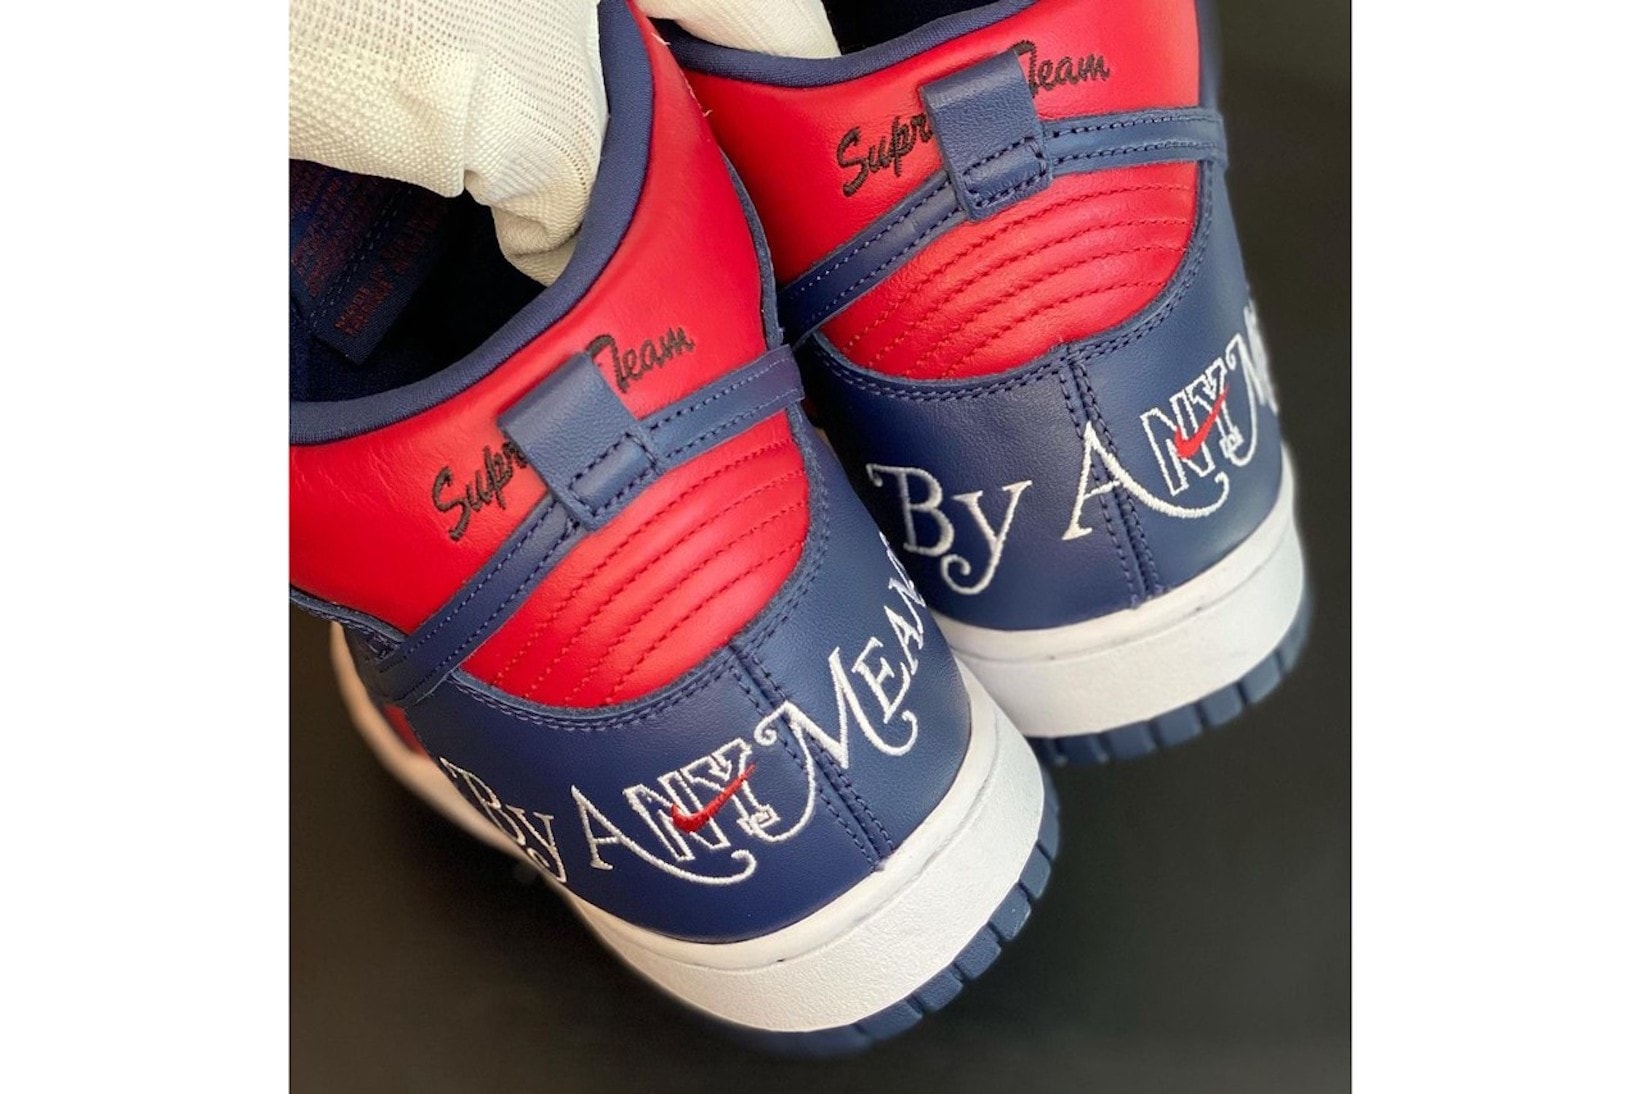 Supreme x Nike Air Jordan 1 Collaboration Rumors